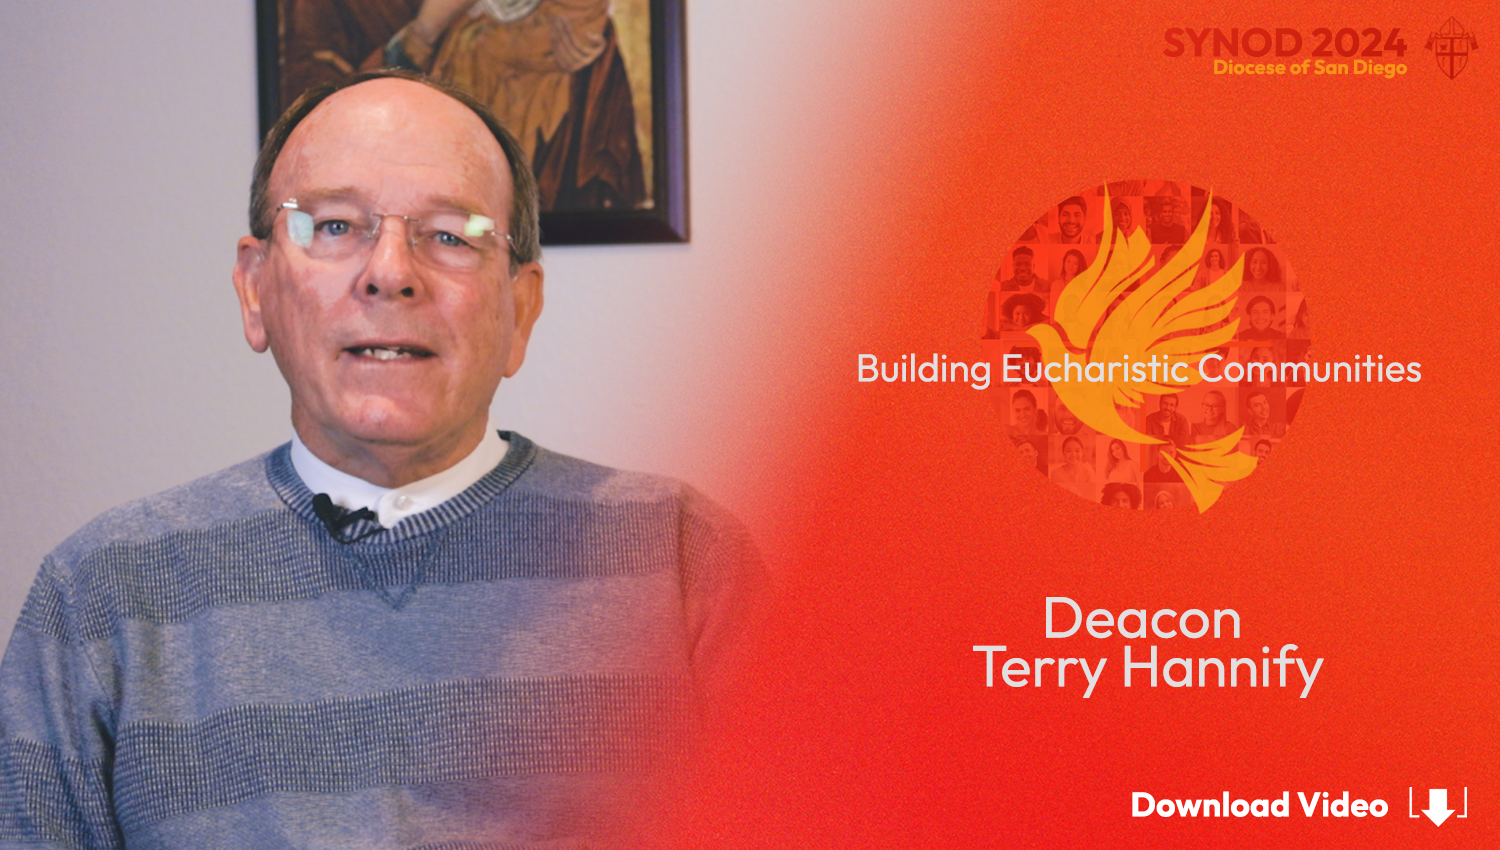 Deacon Terry Testimonial Video